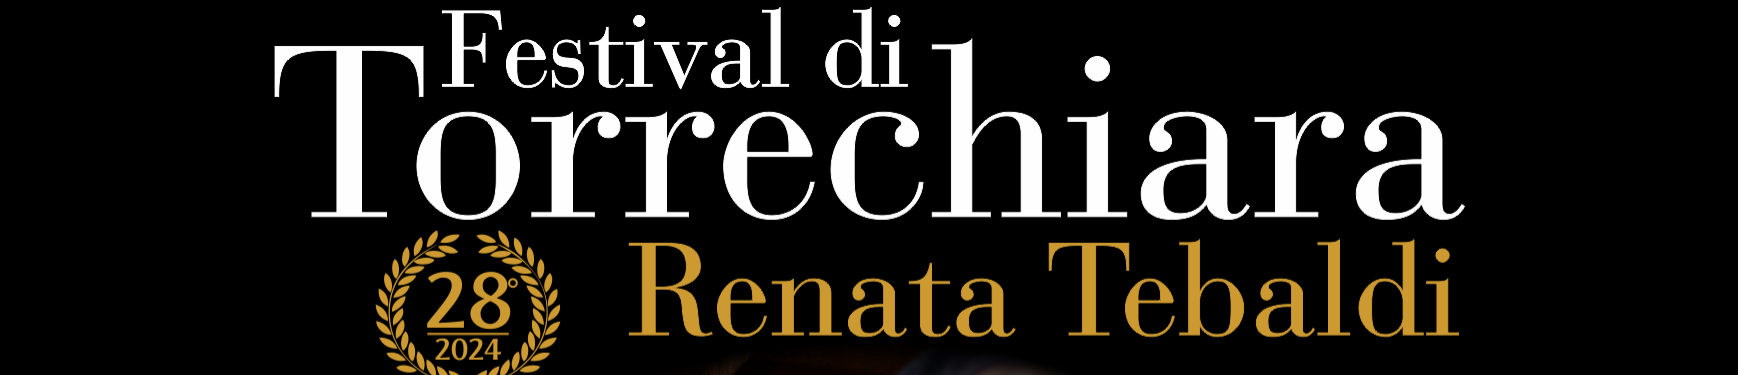 Festival di Torrechiara Renata Tebaldi